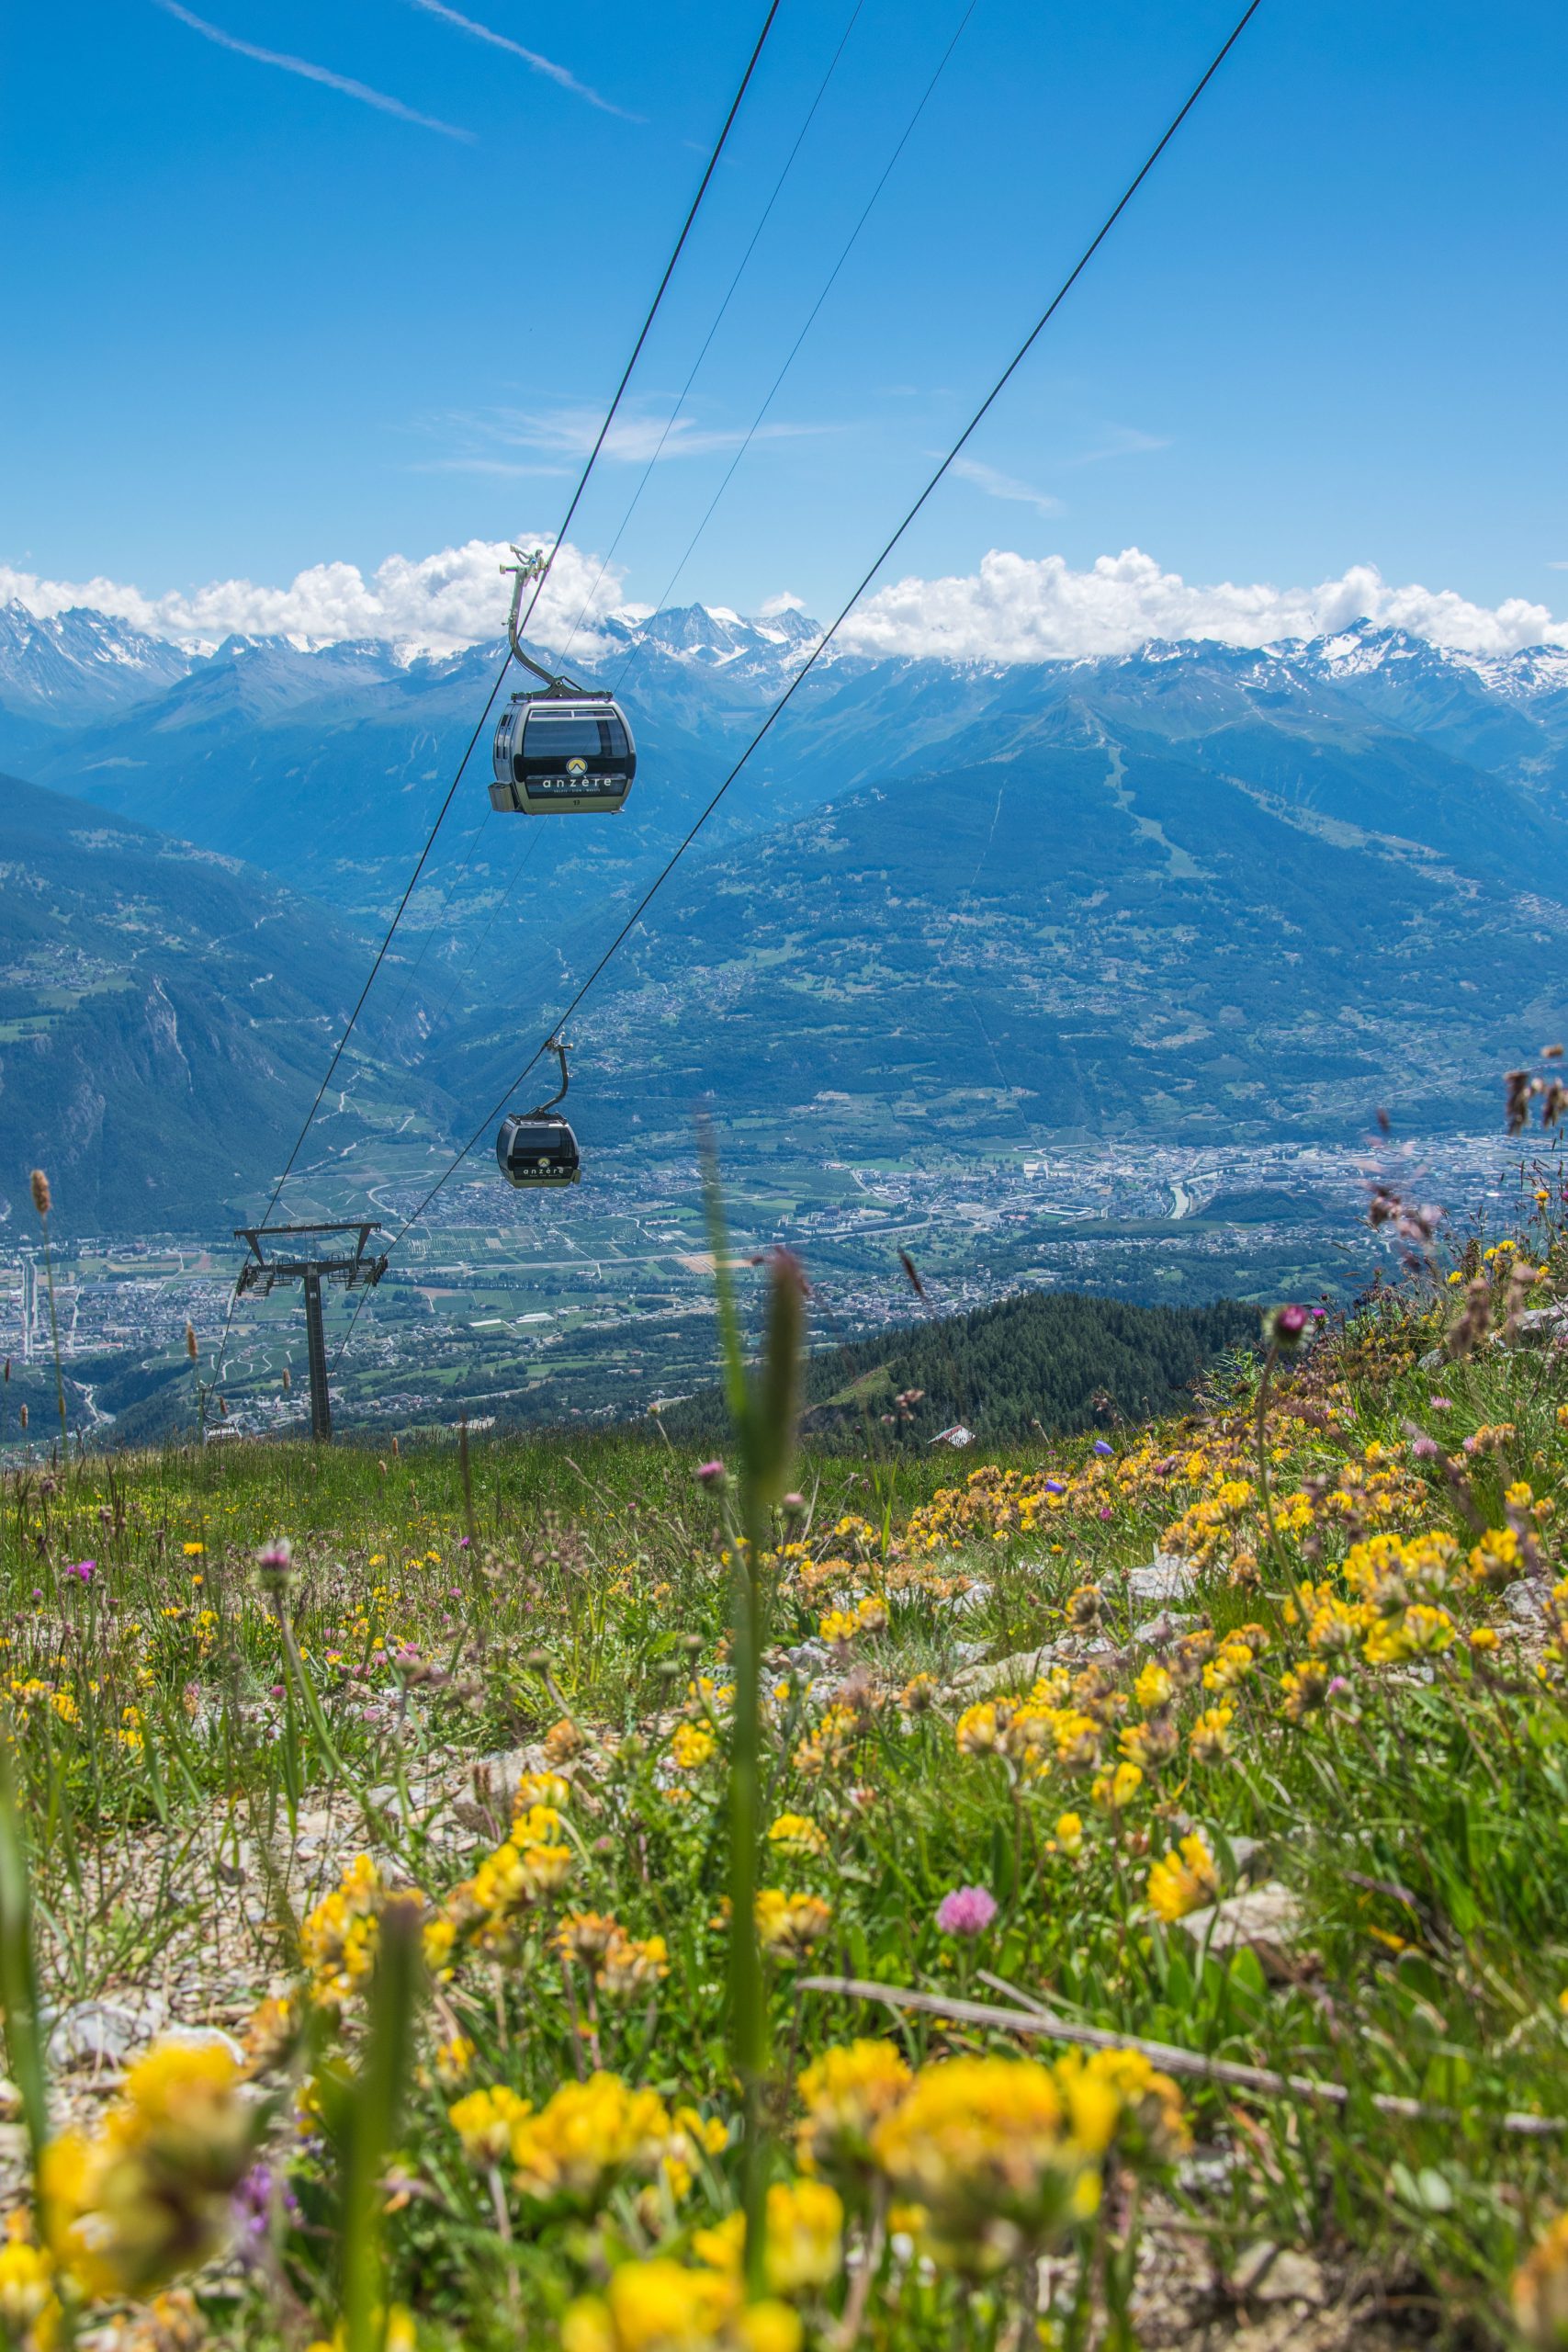 Summer Activities In Swiss Alps